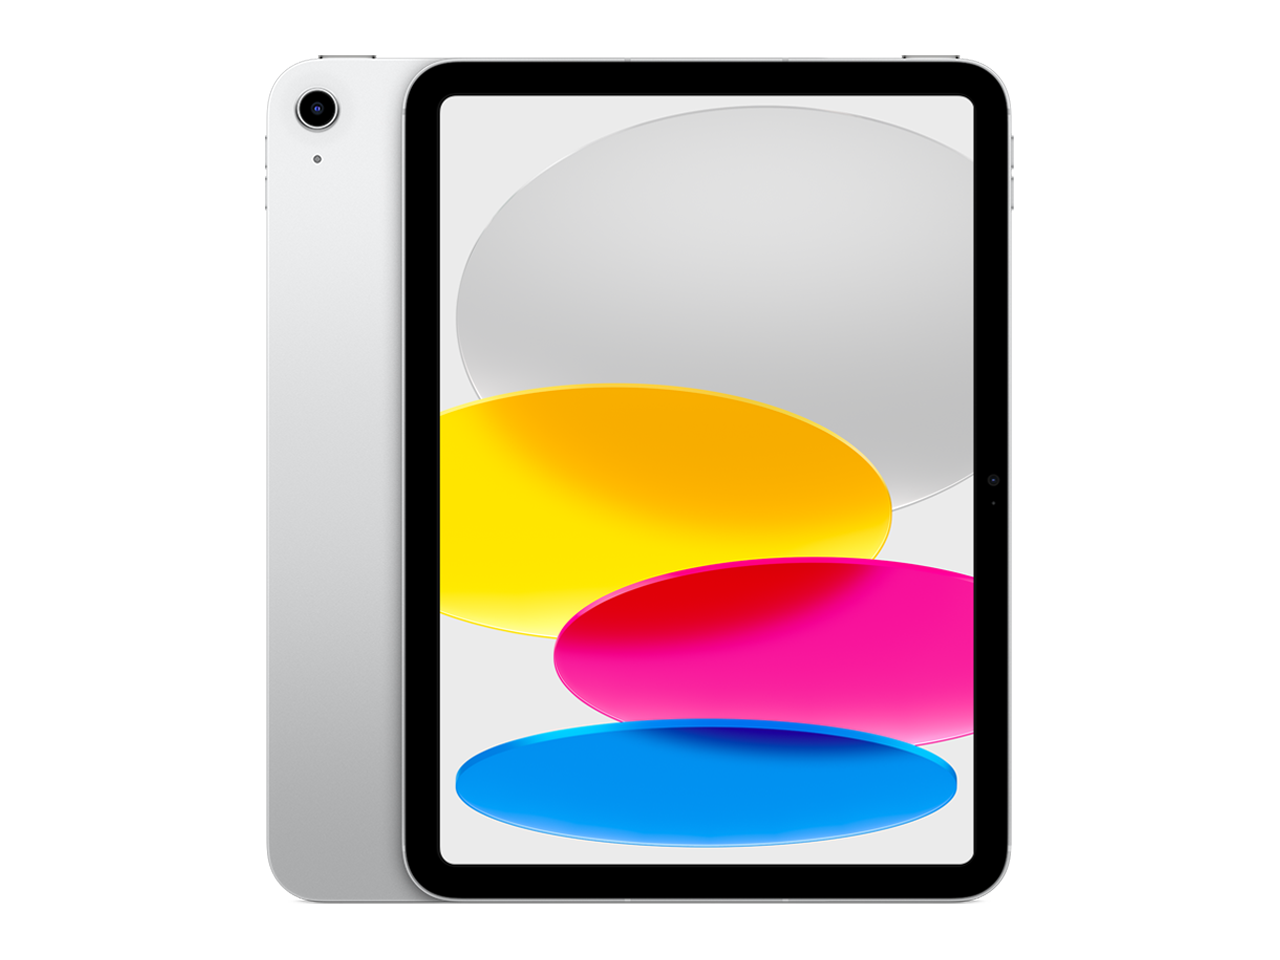 iPad Mini (6th generation) - Wikipedia